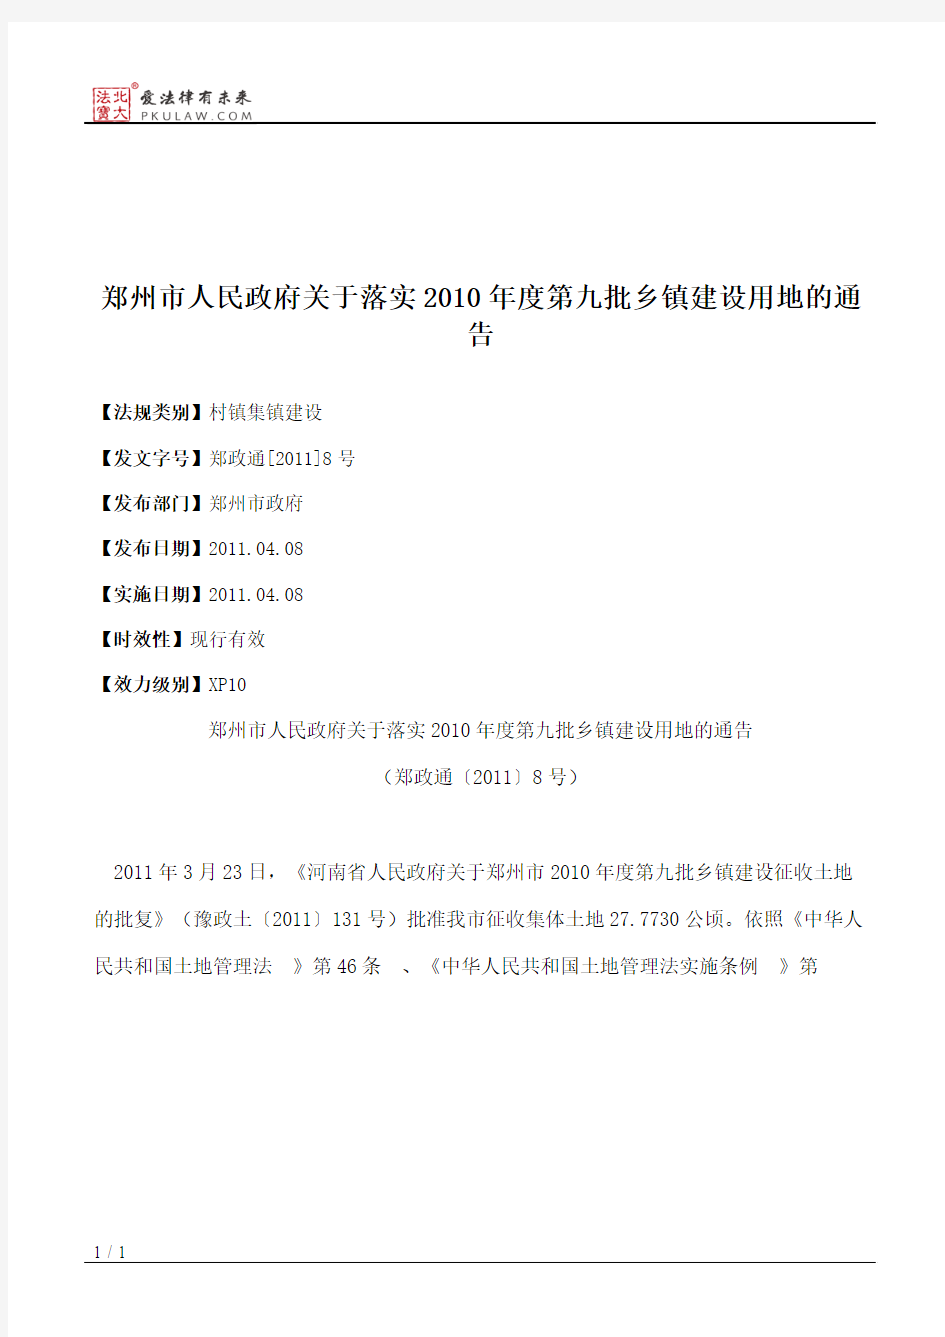 郑州市人民政府关于落实2010年度第九批乡镇建设用地的通告